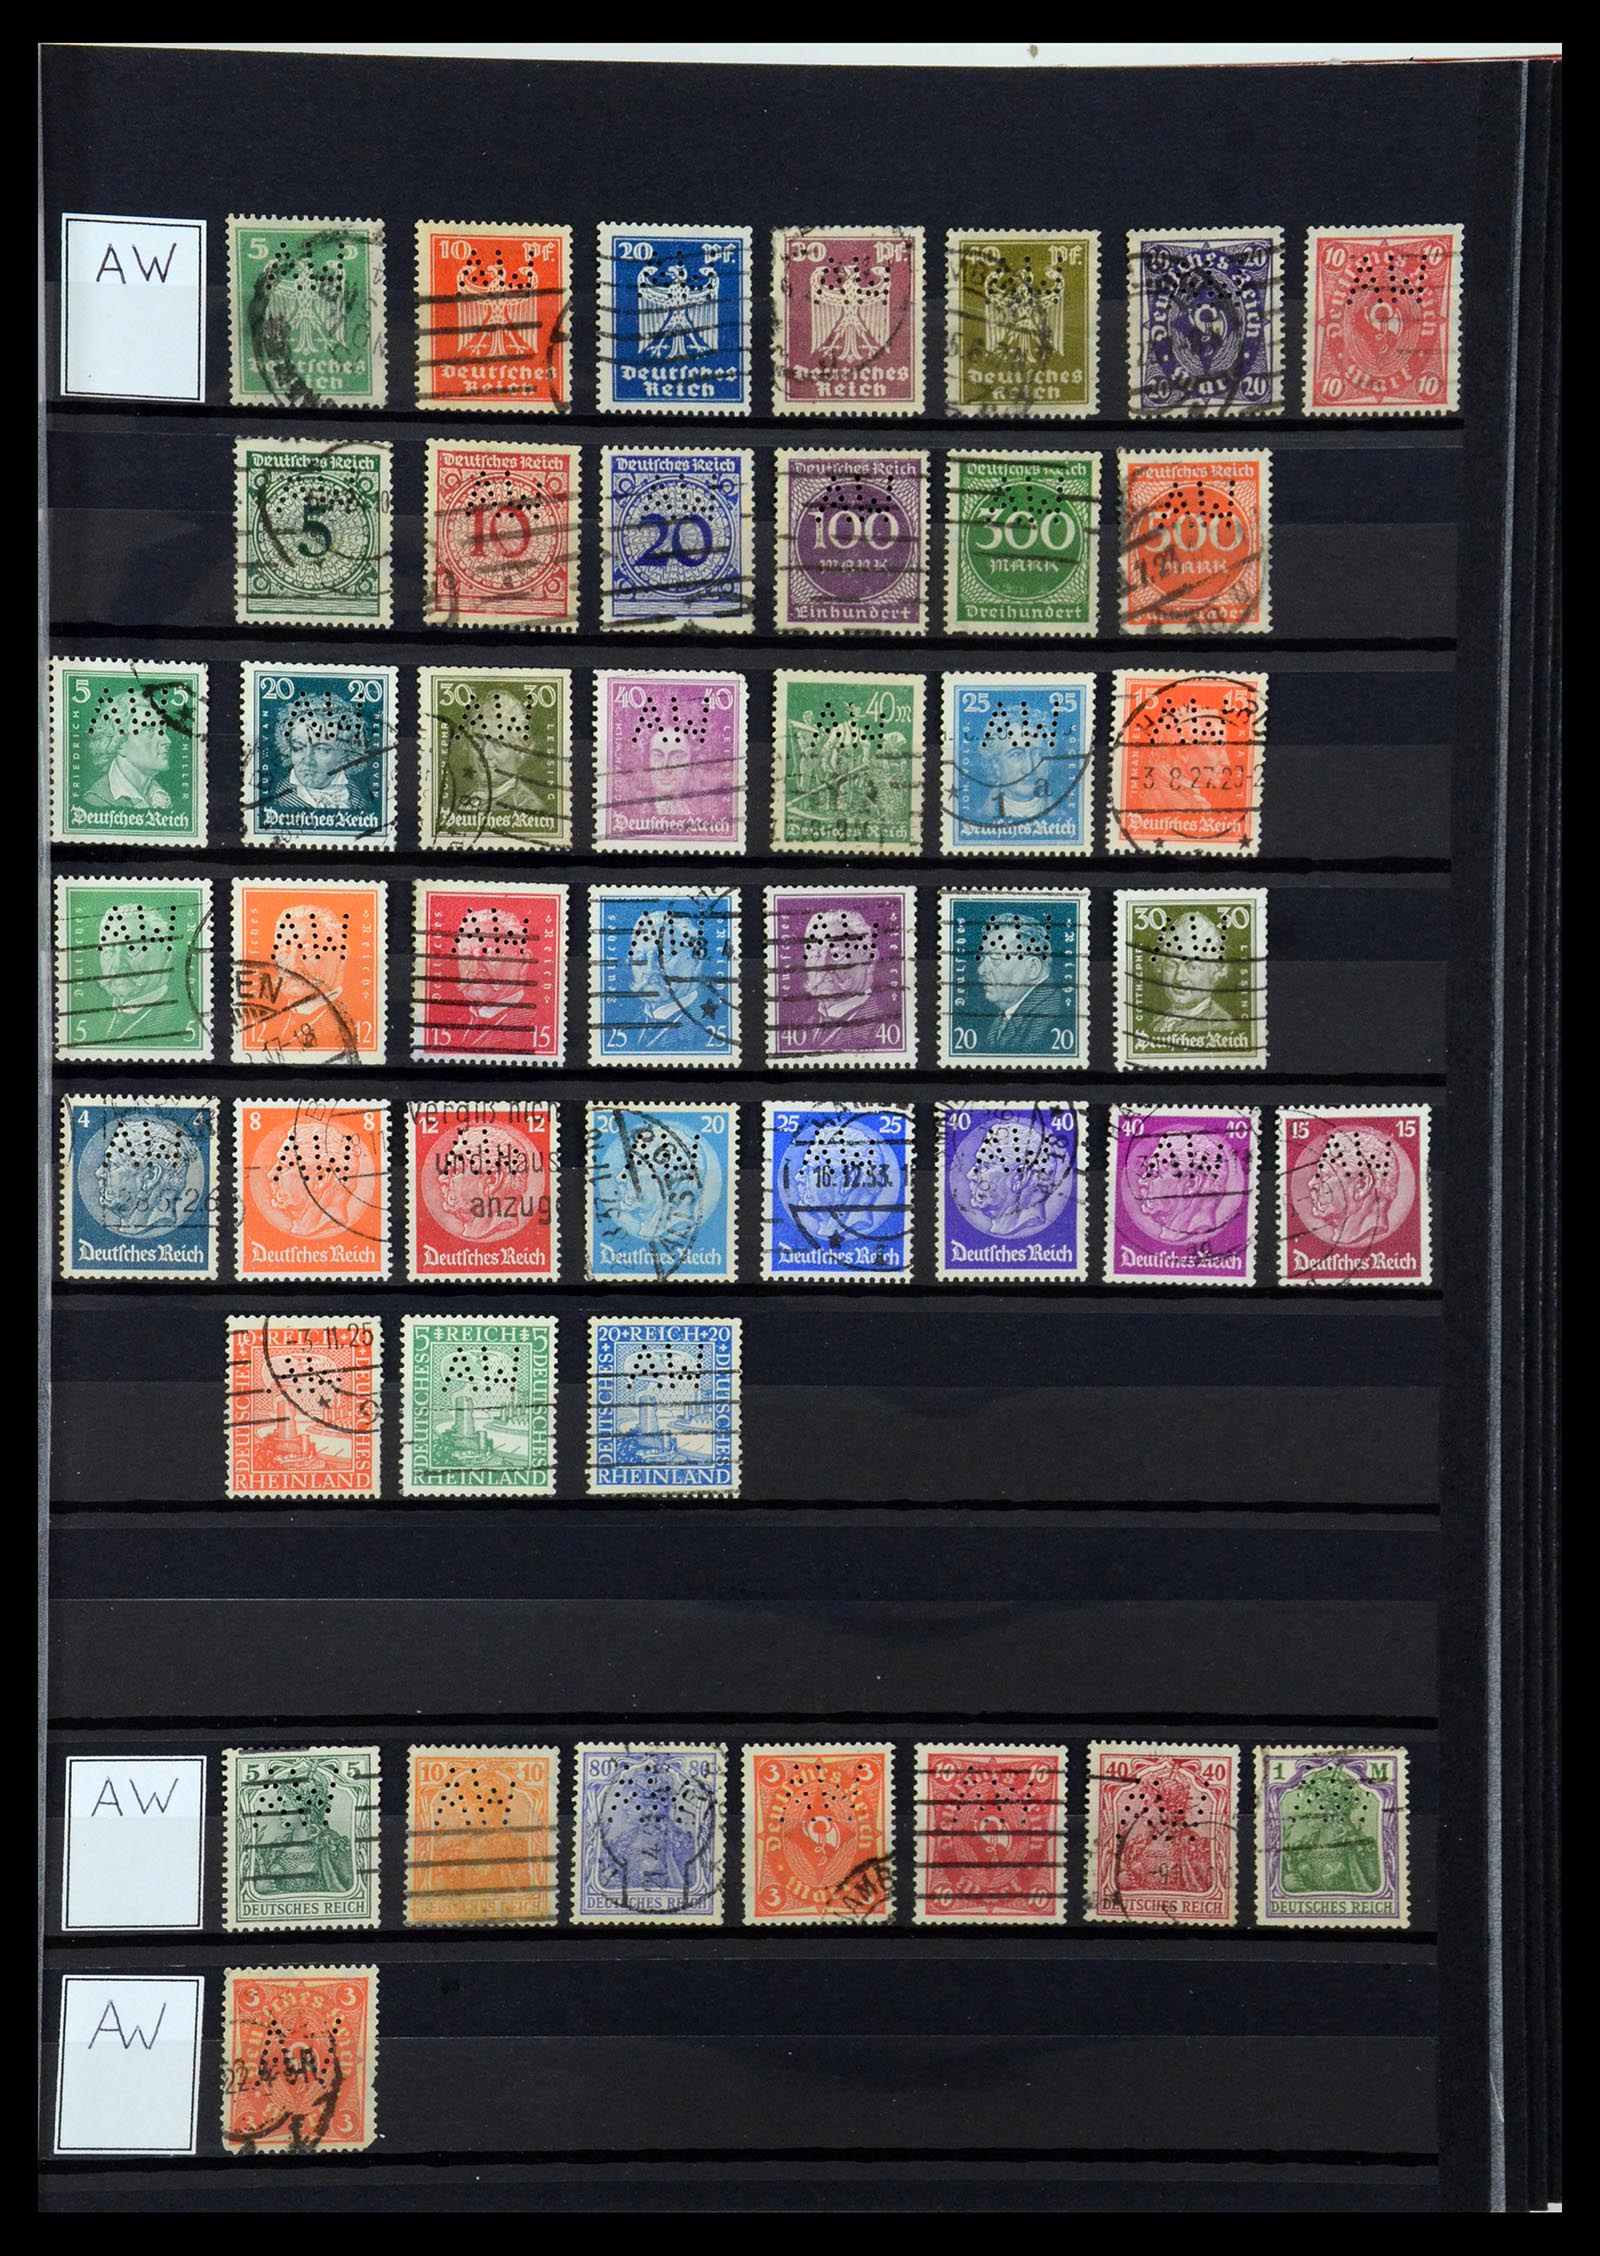 36405 029 - Stamp collection 36405 German Reich perfins 1880-1945.